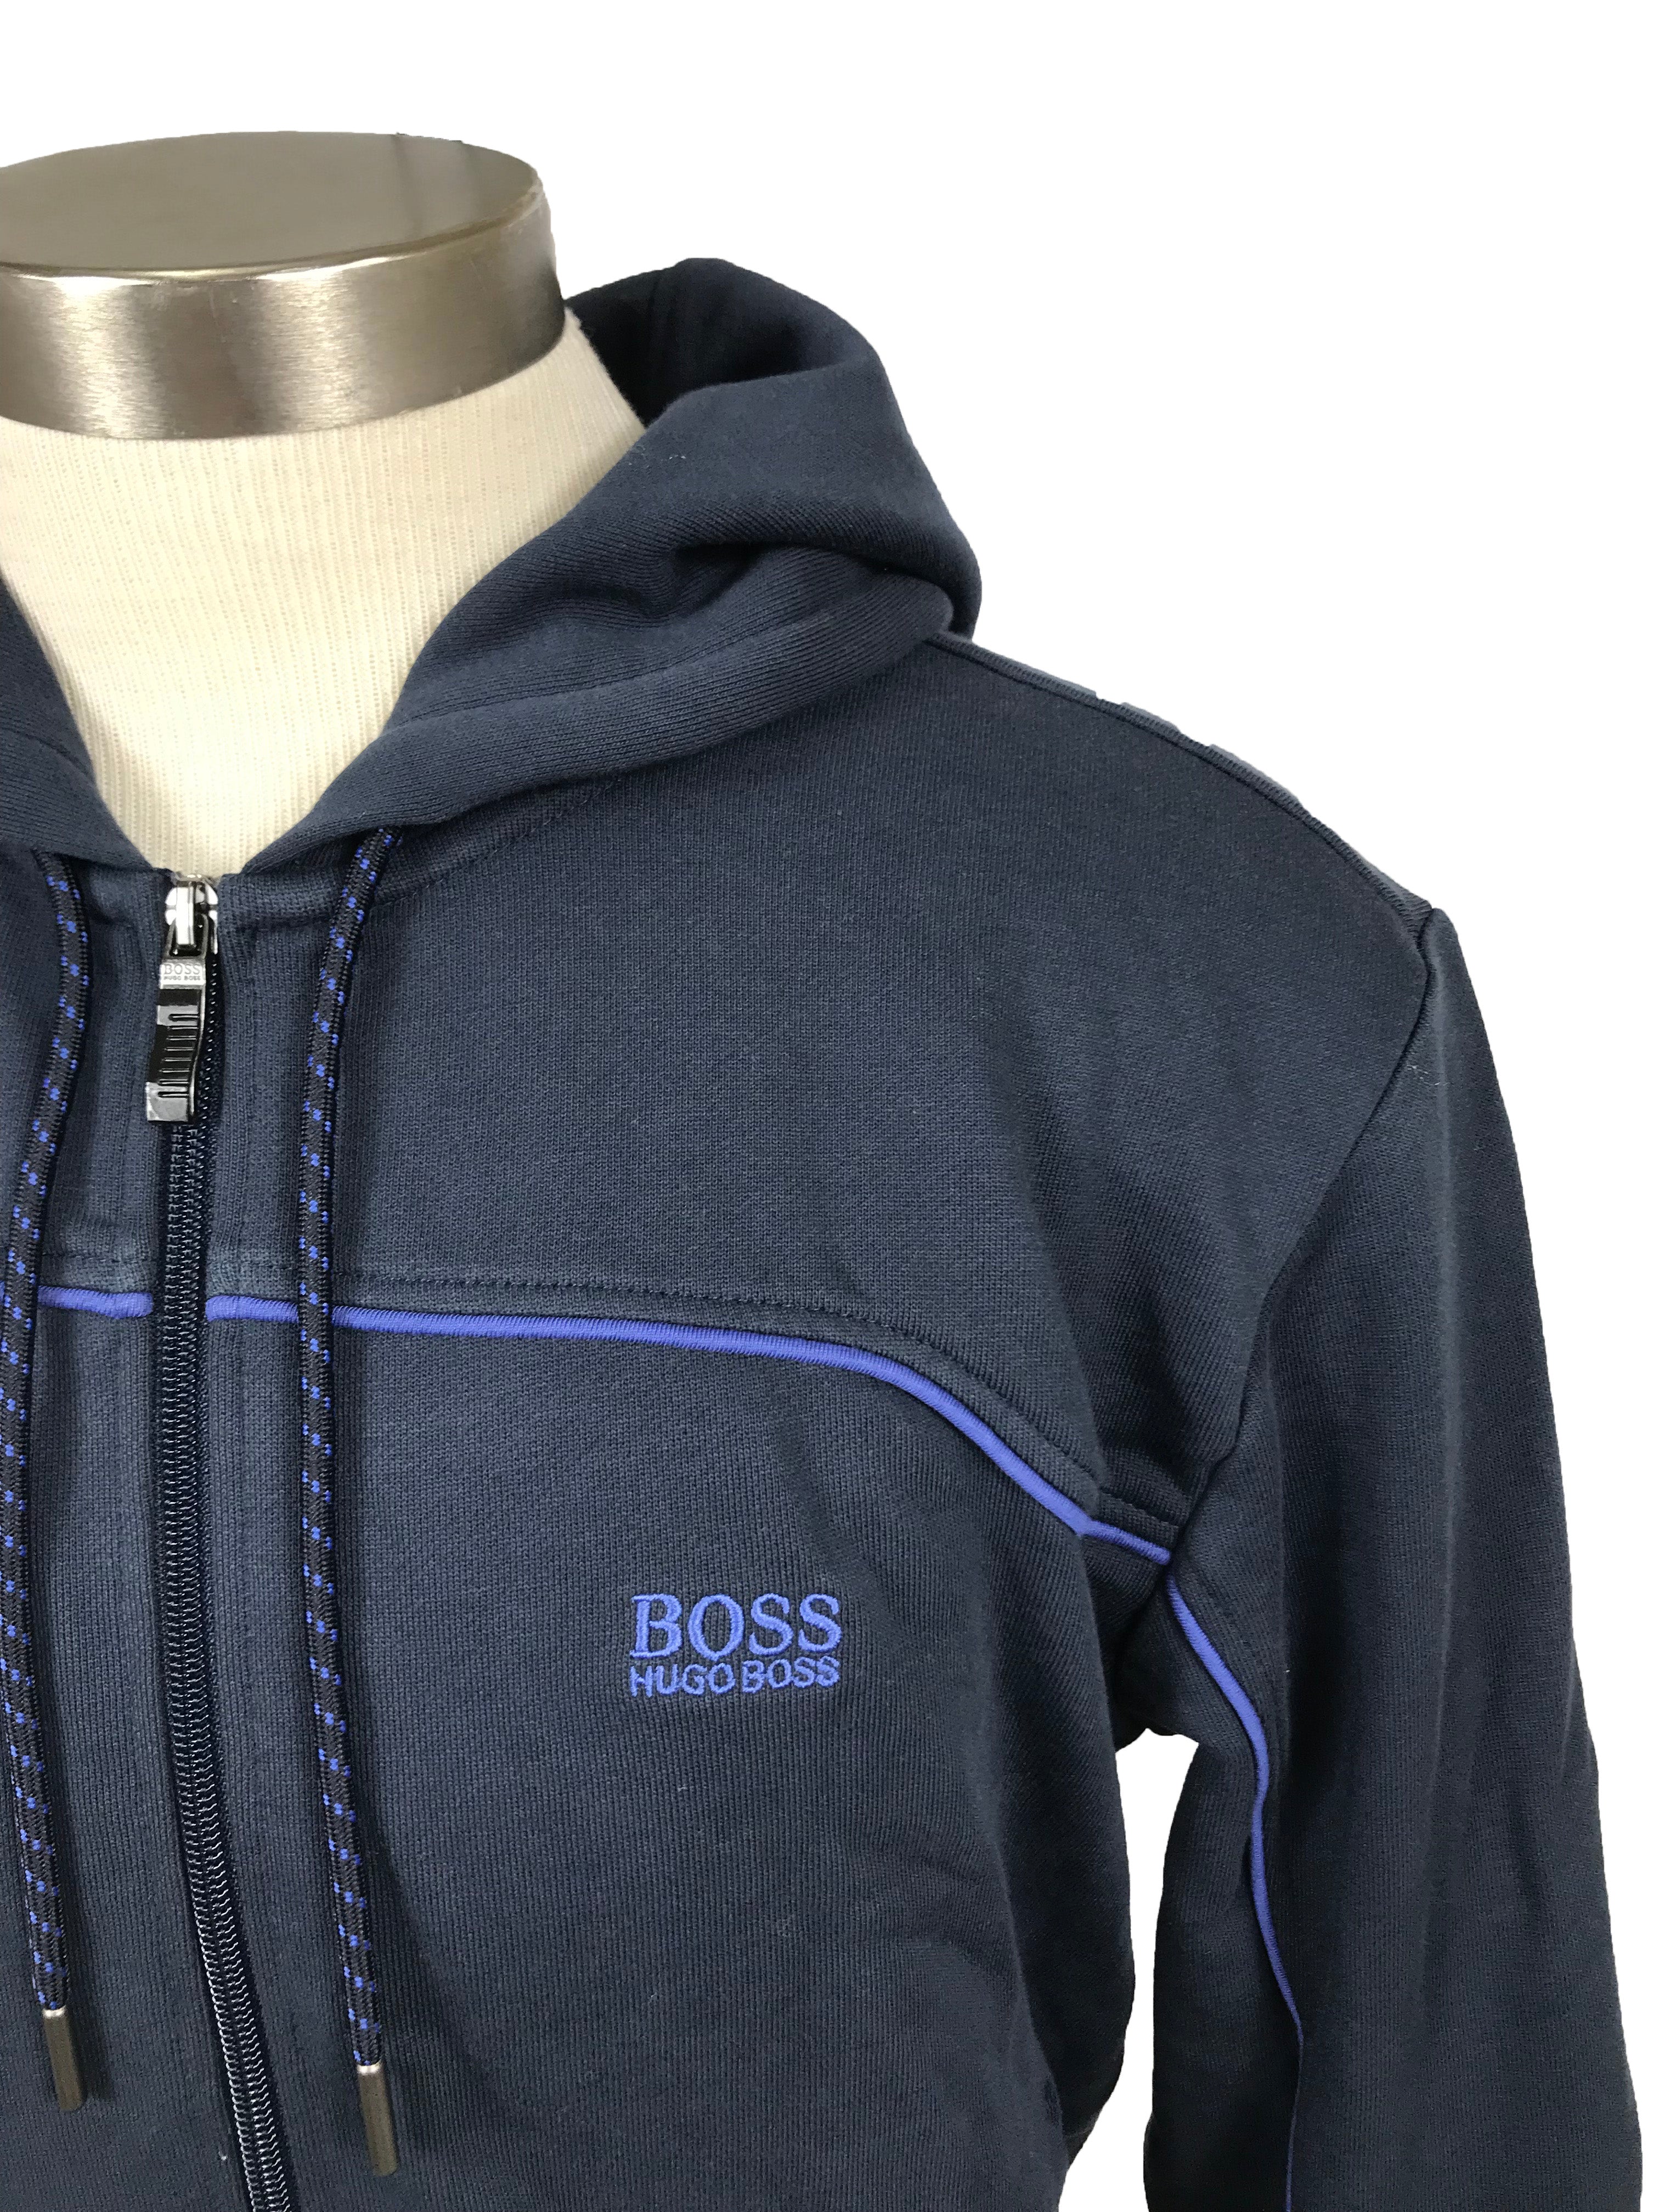 Hugo Boss Black Zip-Up Sweatshirt Men's Size Medium